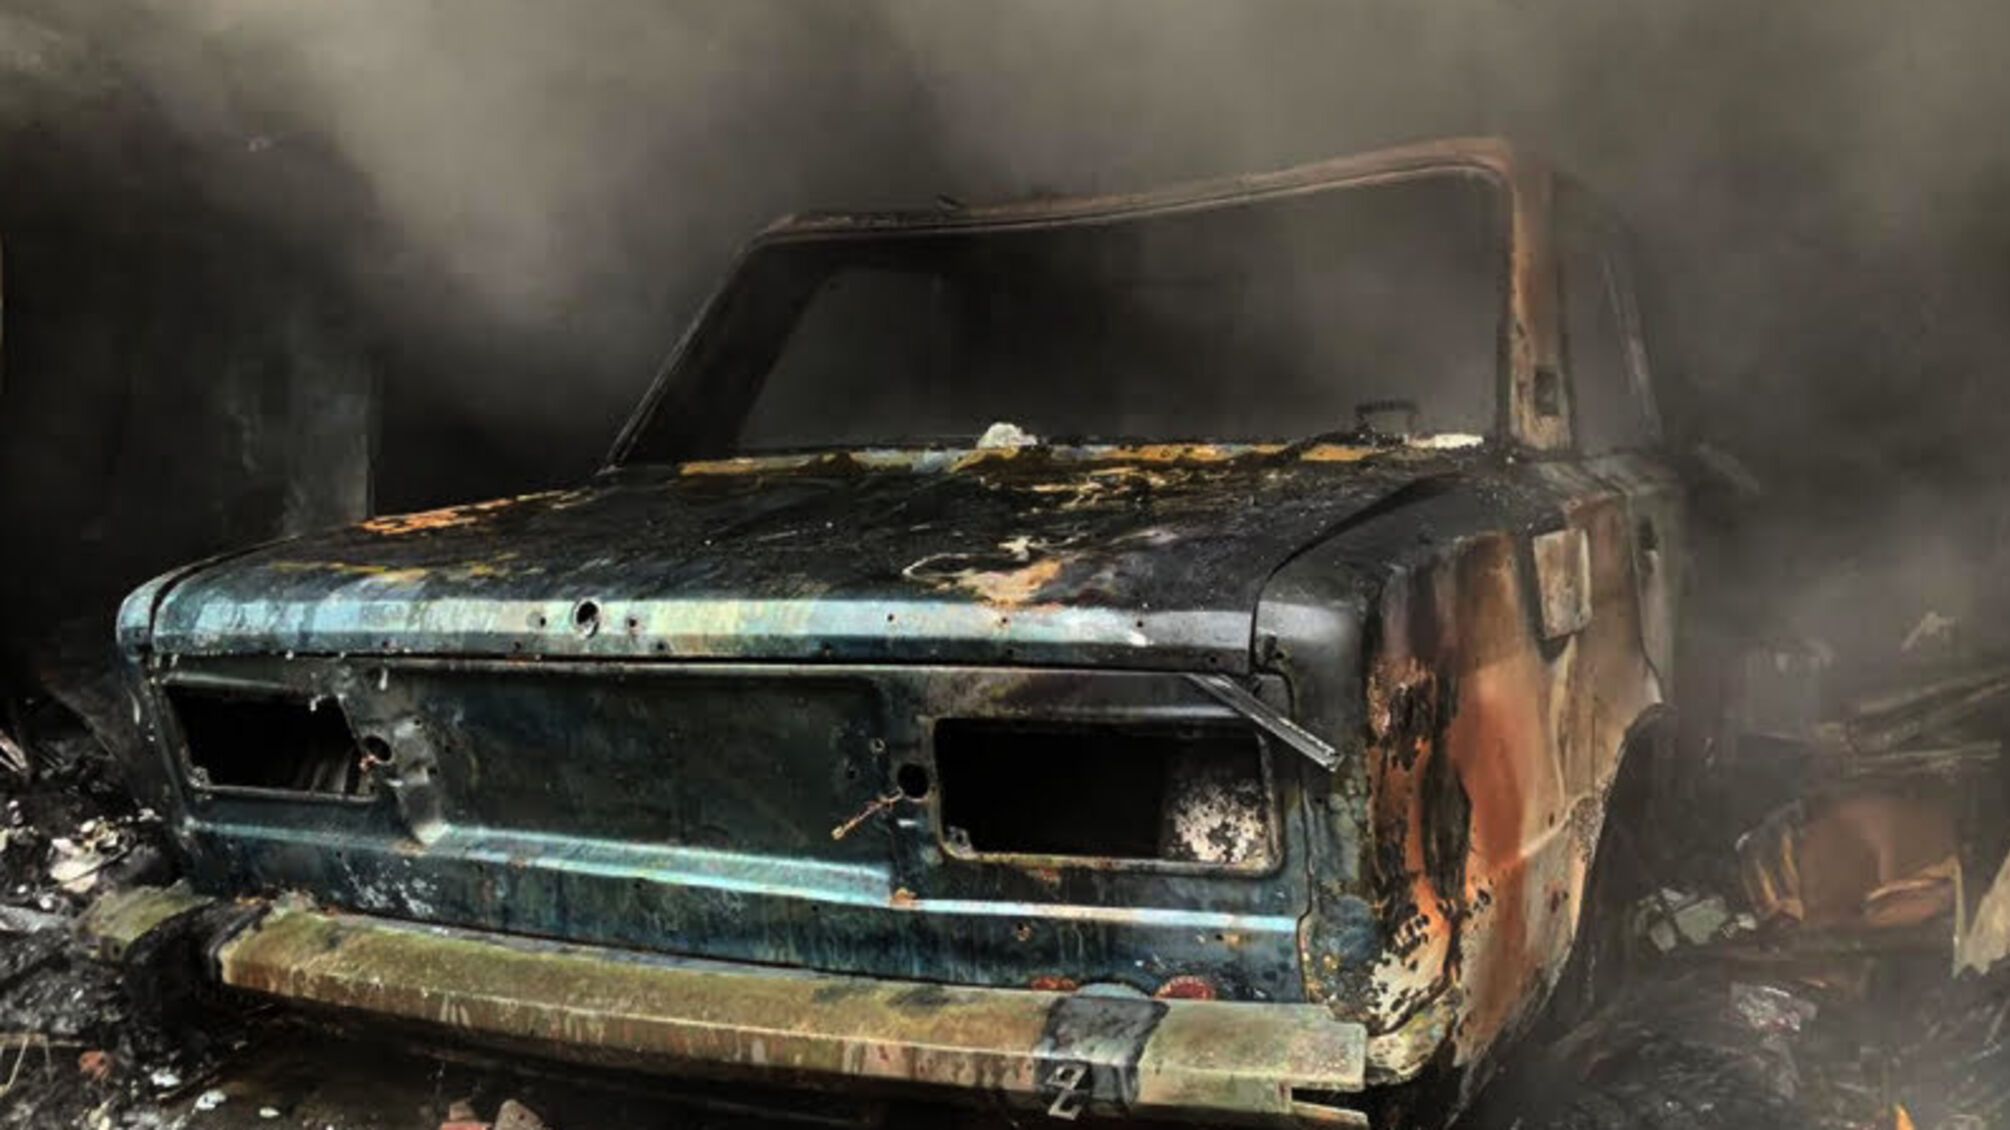 Дніпропетровська область: рятувальники ліквідували пожежу в гаражі з автомобілем всередині